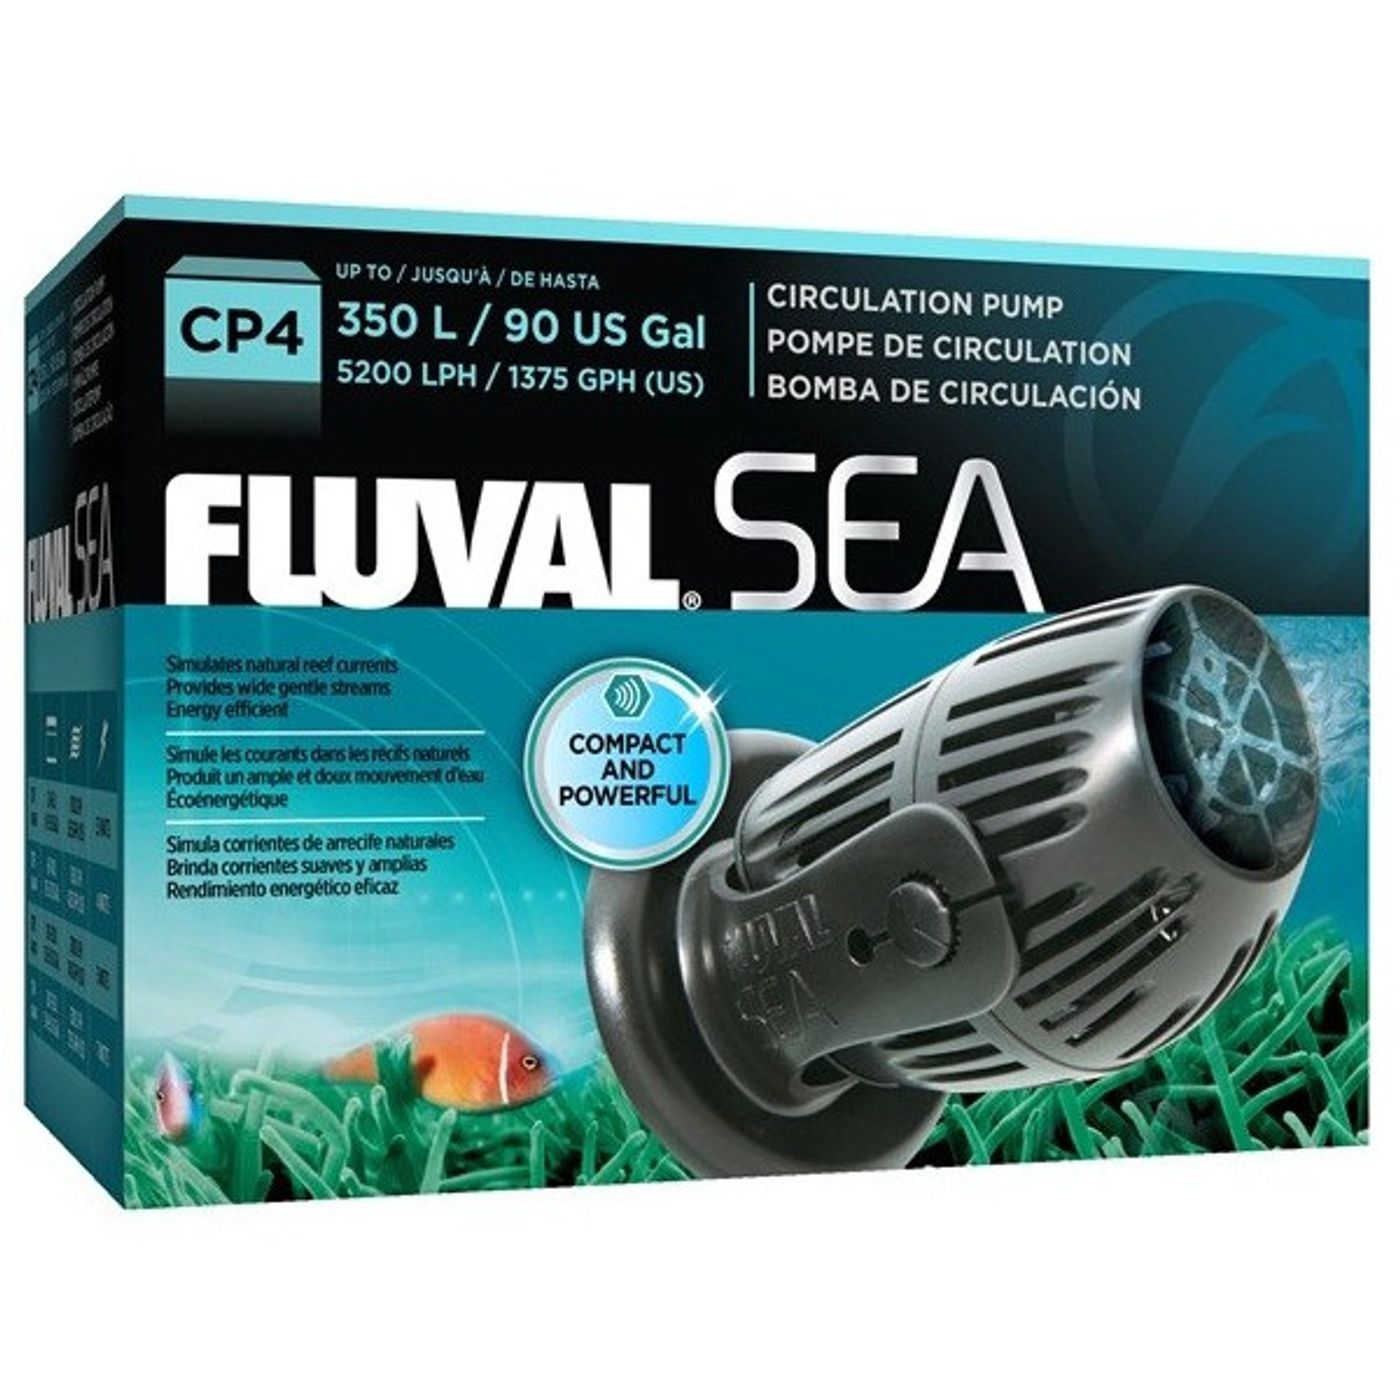 FLUVAL-Sea-Bomba-de-Circulacao-CP4